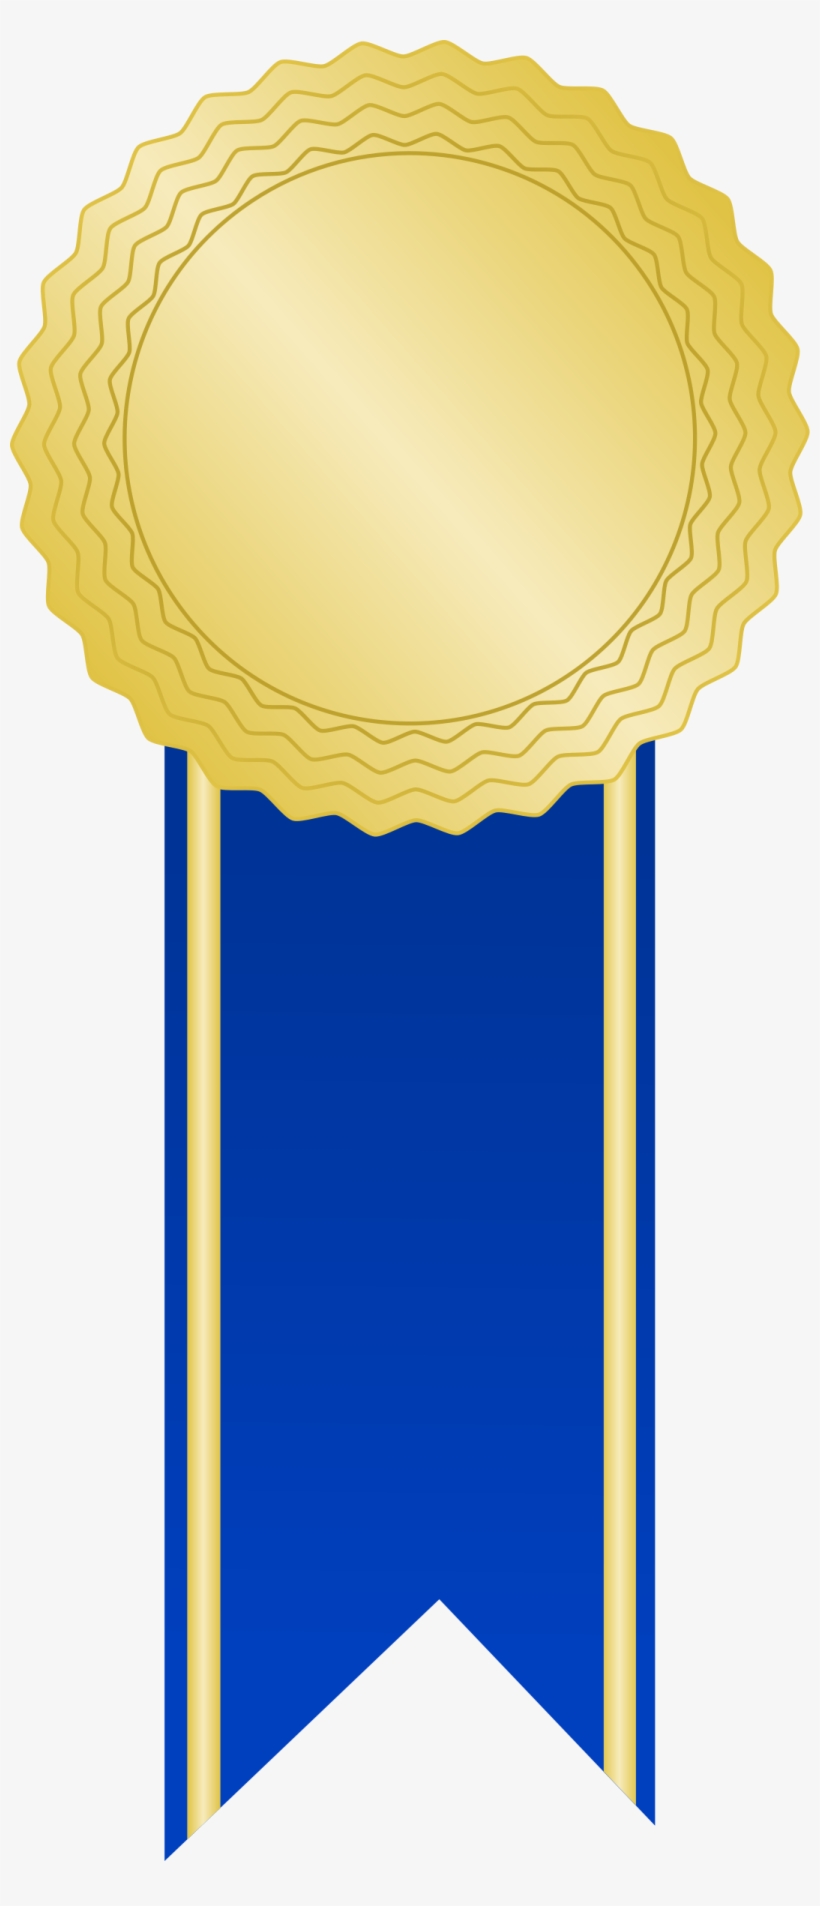 Golden Award With A Blue Ribbon - Vector Award Ribbon Png, transparent png #9333669